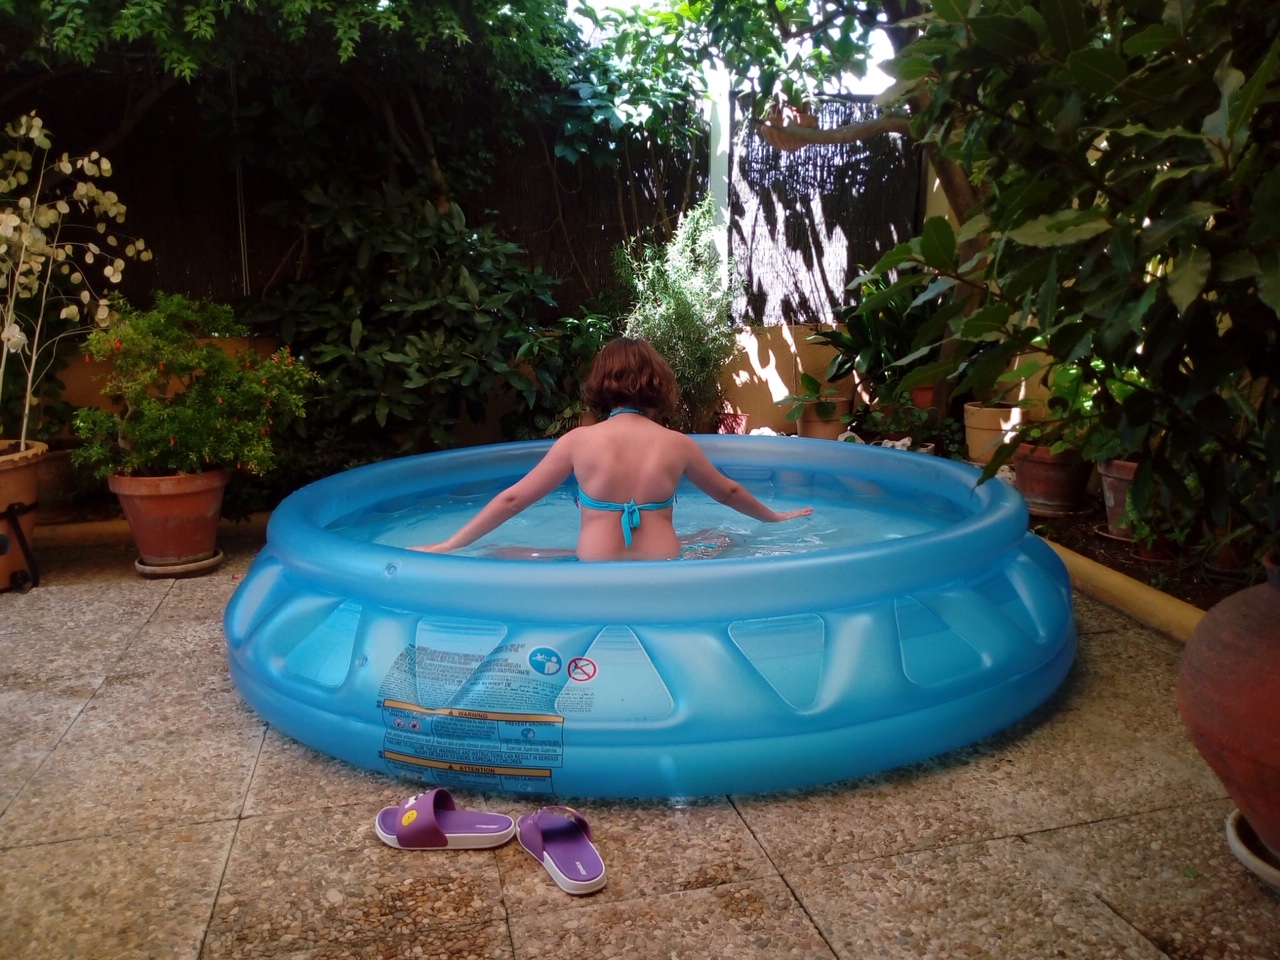 Una niña se da un baño en la piscina de su terraza.